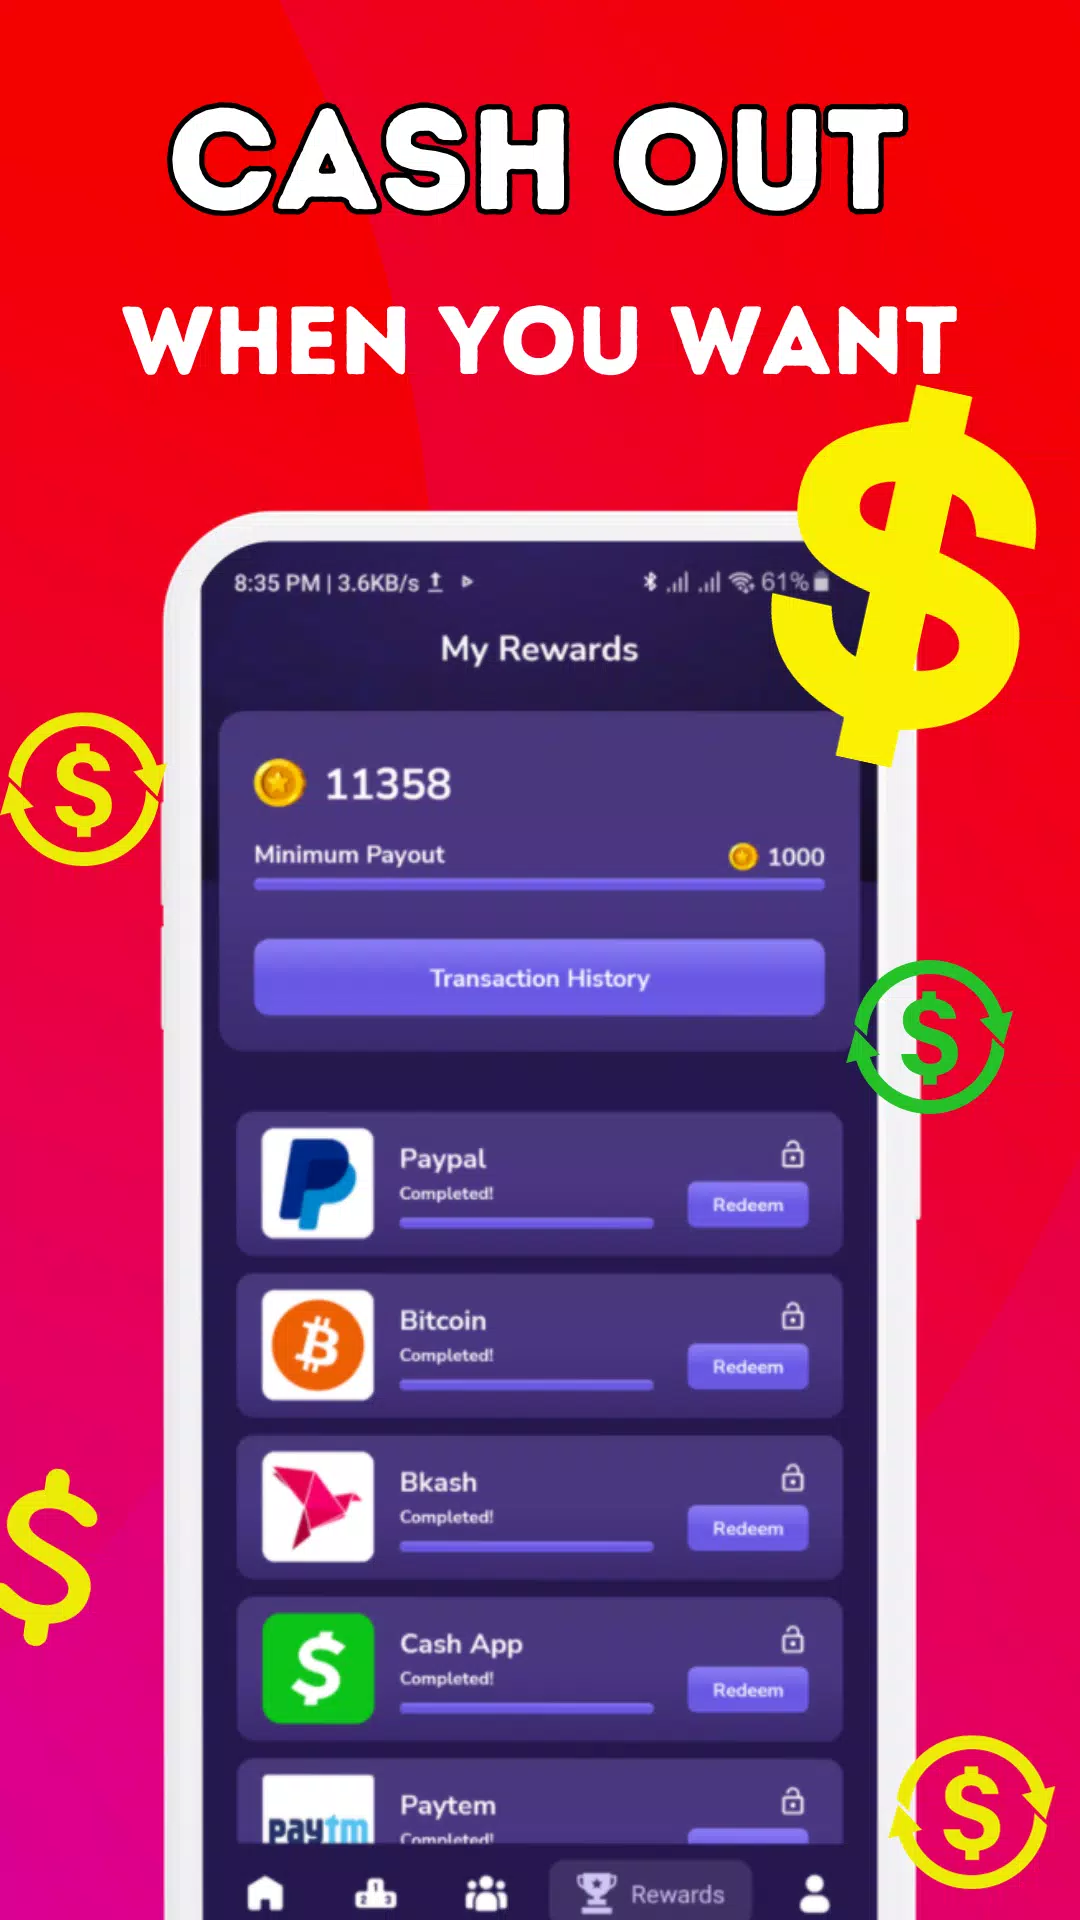 تحميل تطبيق Sub Pay لربح المال من مشاهدة الفيديوهات للاندرويد 2024 اخر اصدار مجانا